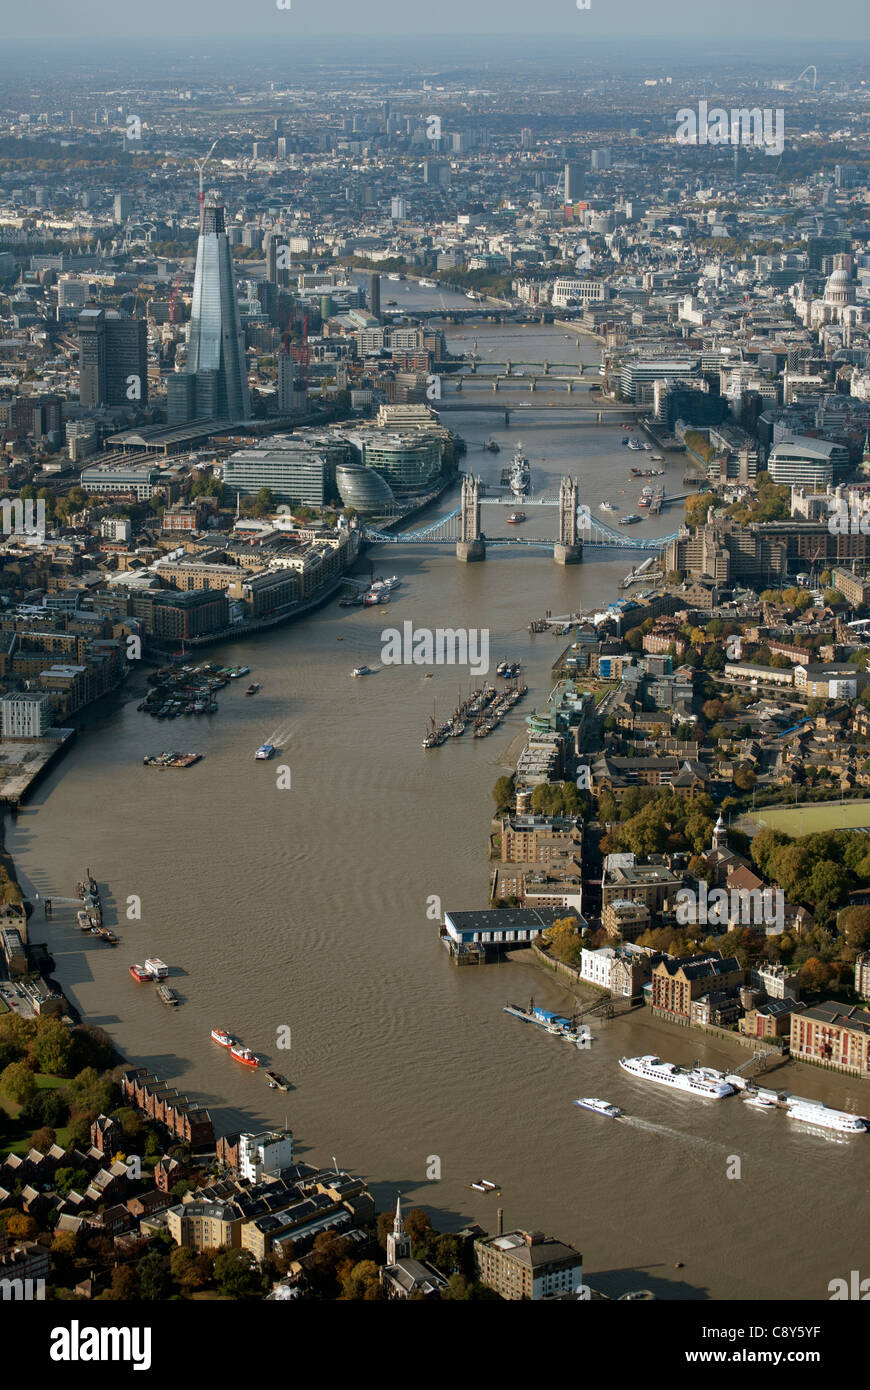 La Tamise avec le Tower Bridge à Londres Angleterre Royaume-uni de l'air. Banque D'Images